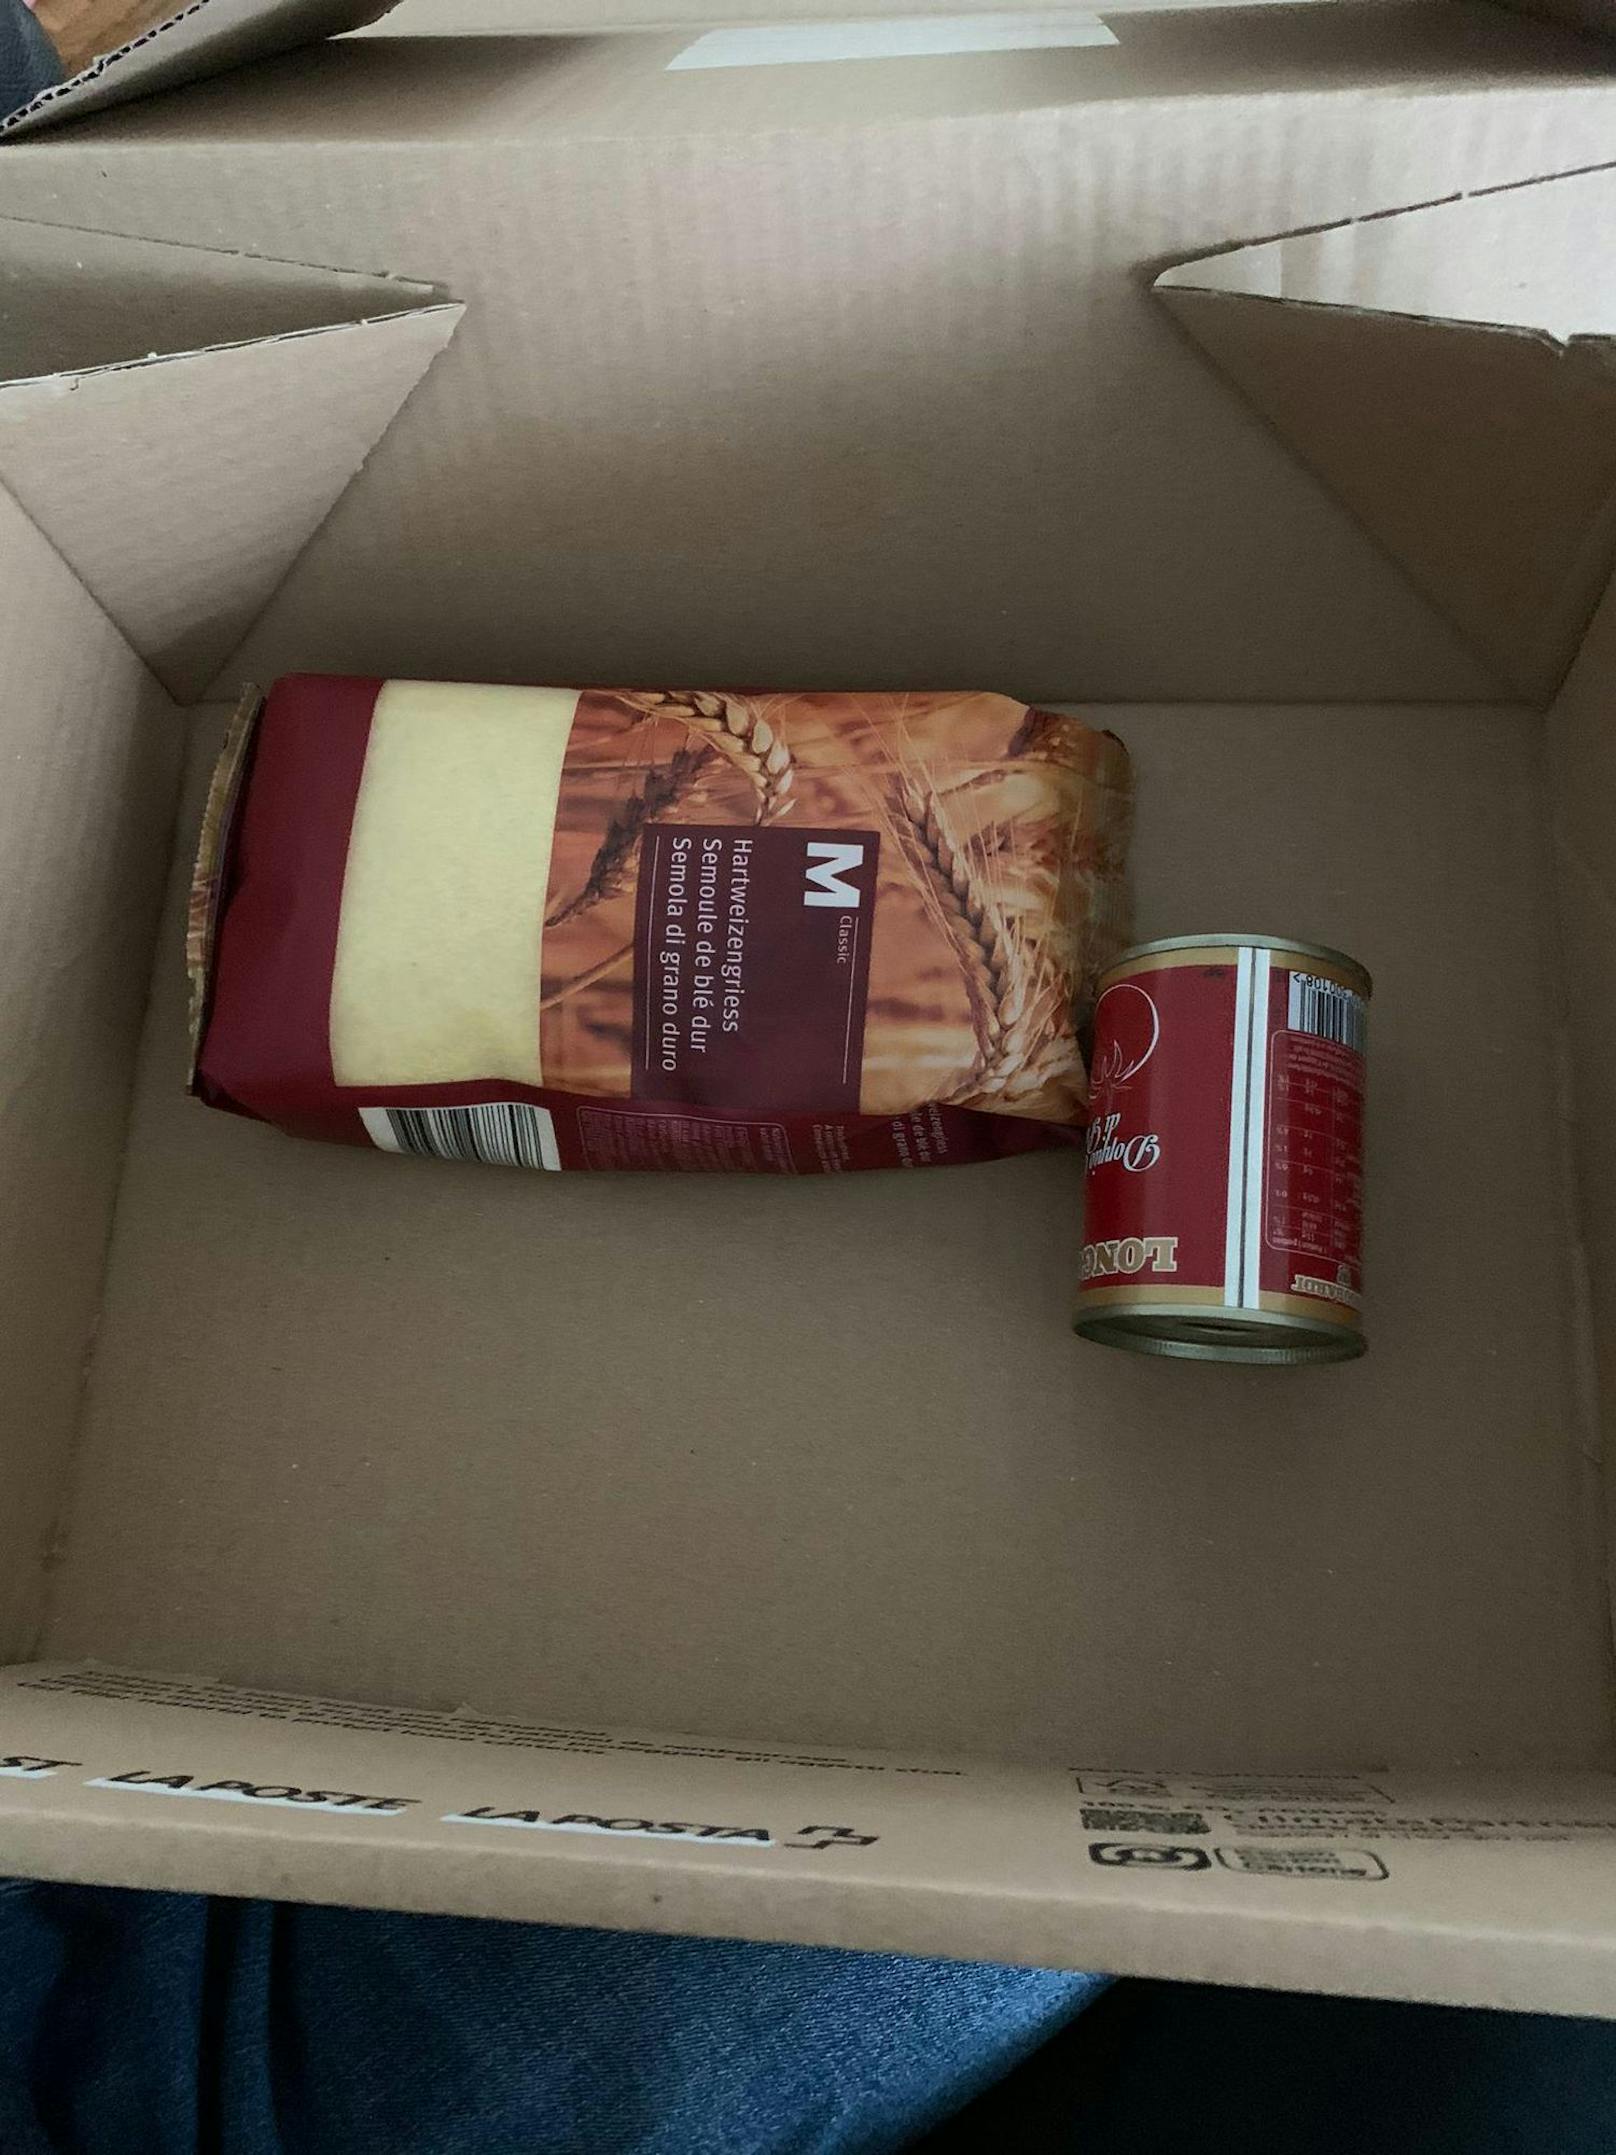 Anstelle eines neuen iPhones bekam N.A. Hartweizengriess und Tomatenmark im Paket zugestellt.